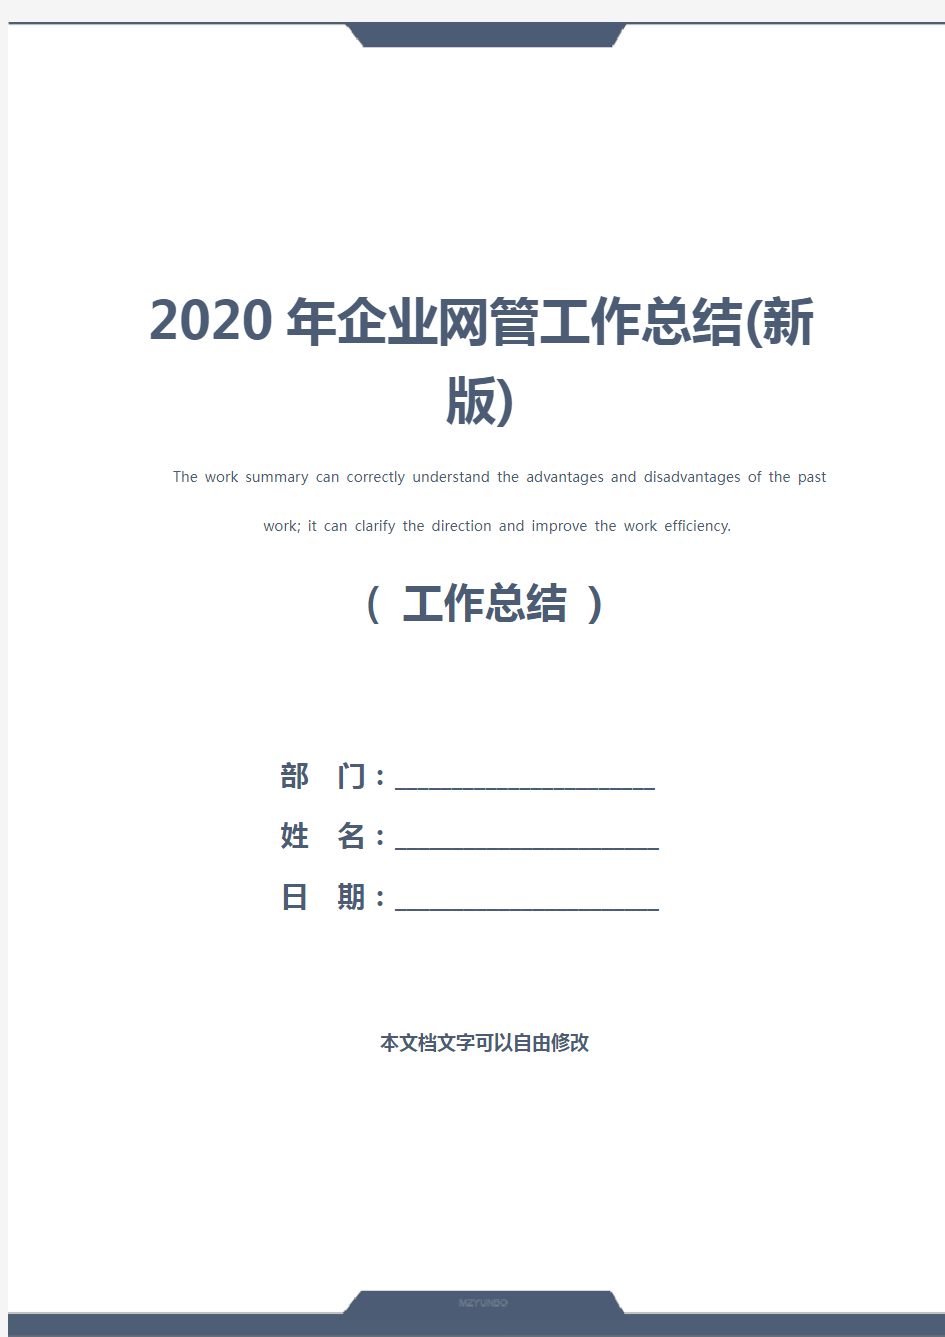 2020年企业网管工作总结(新版)